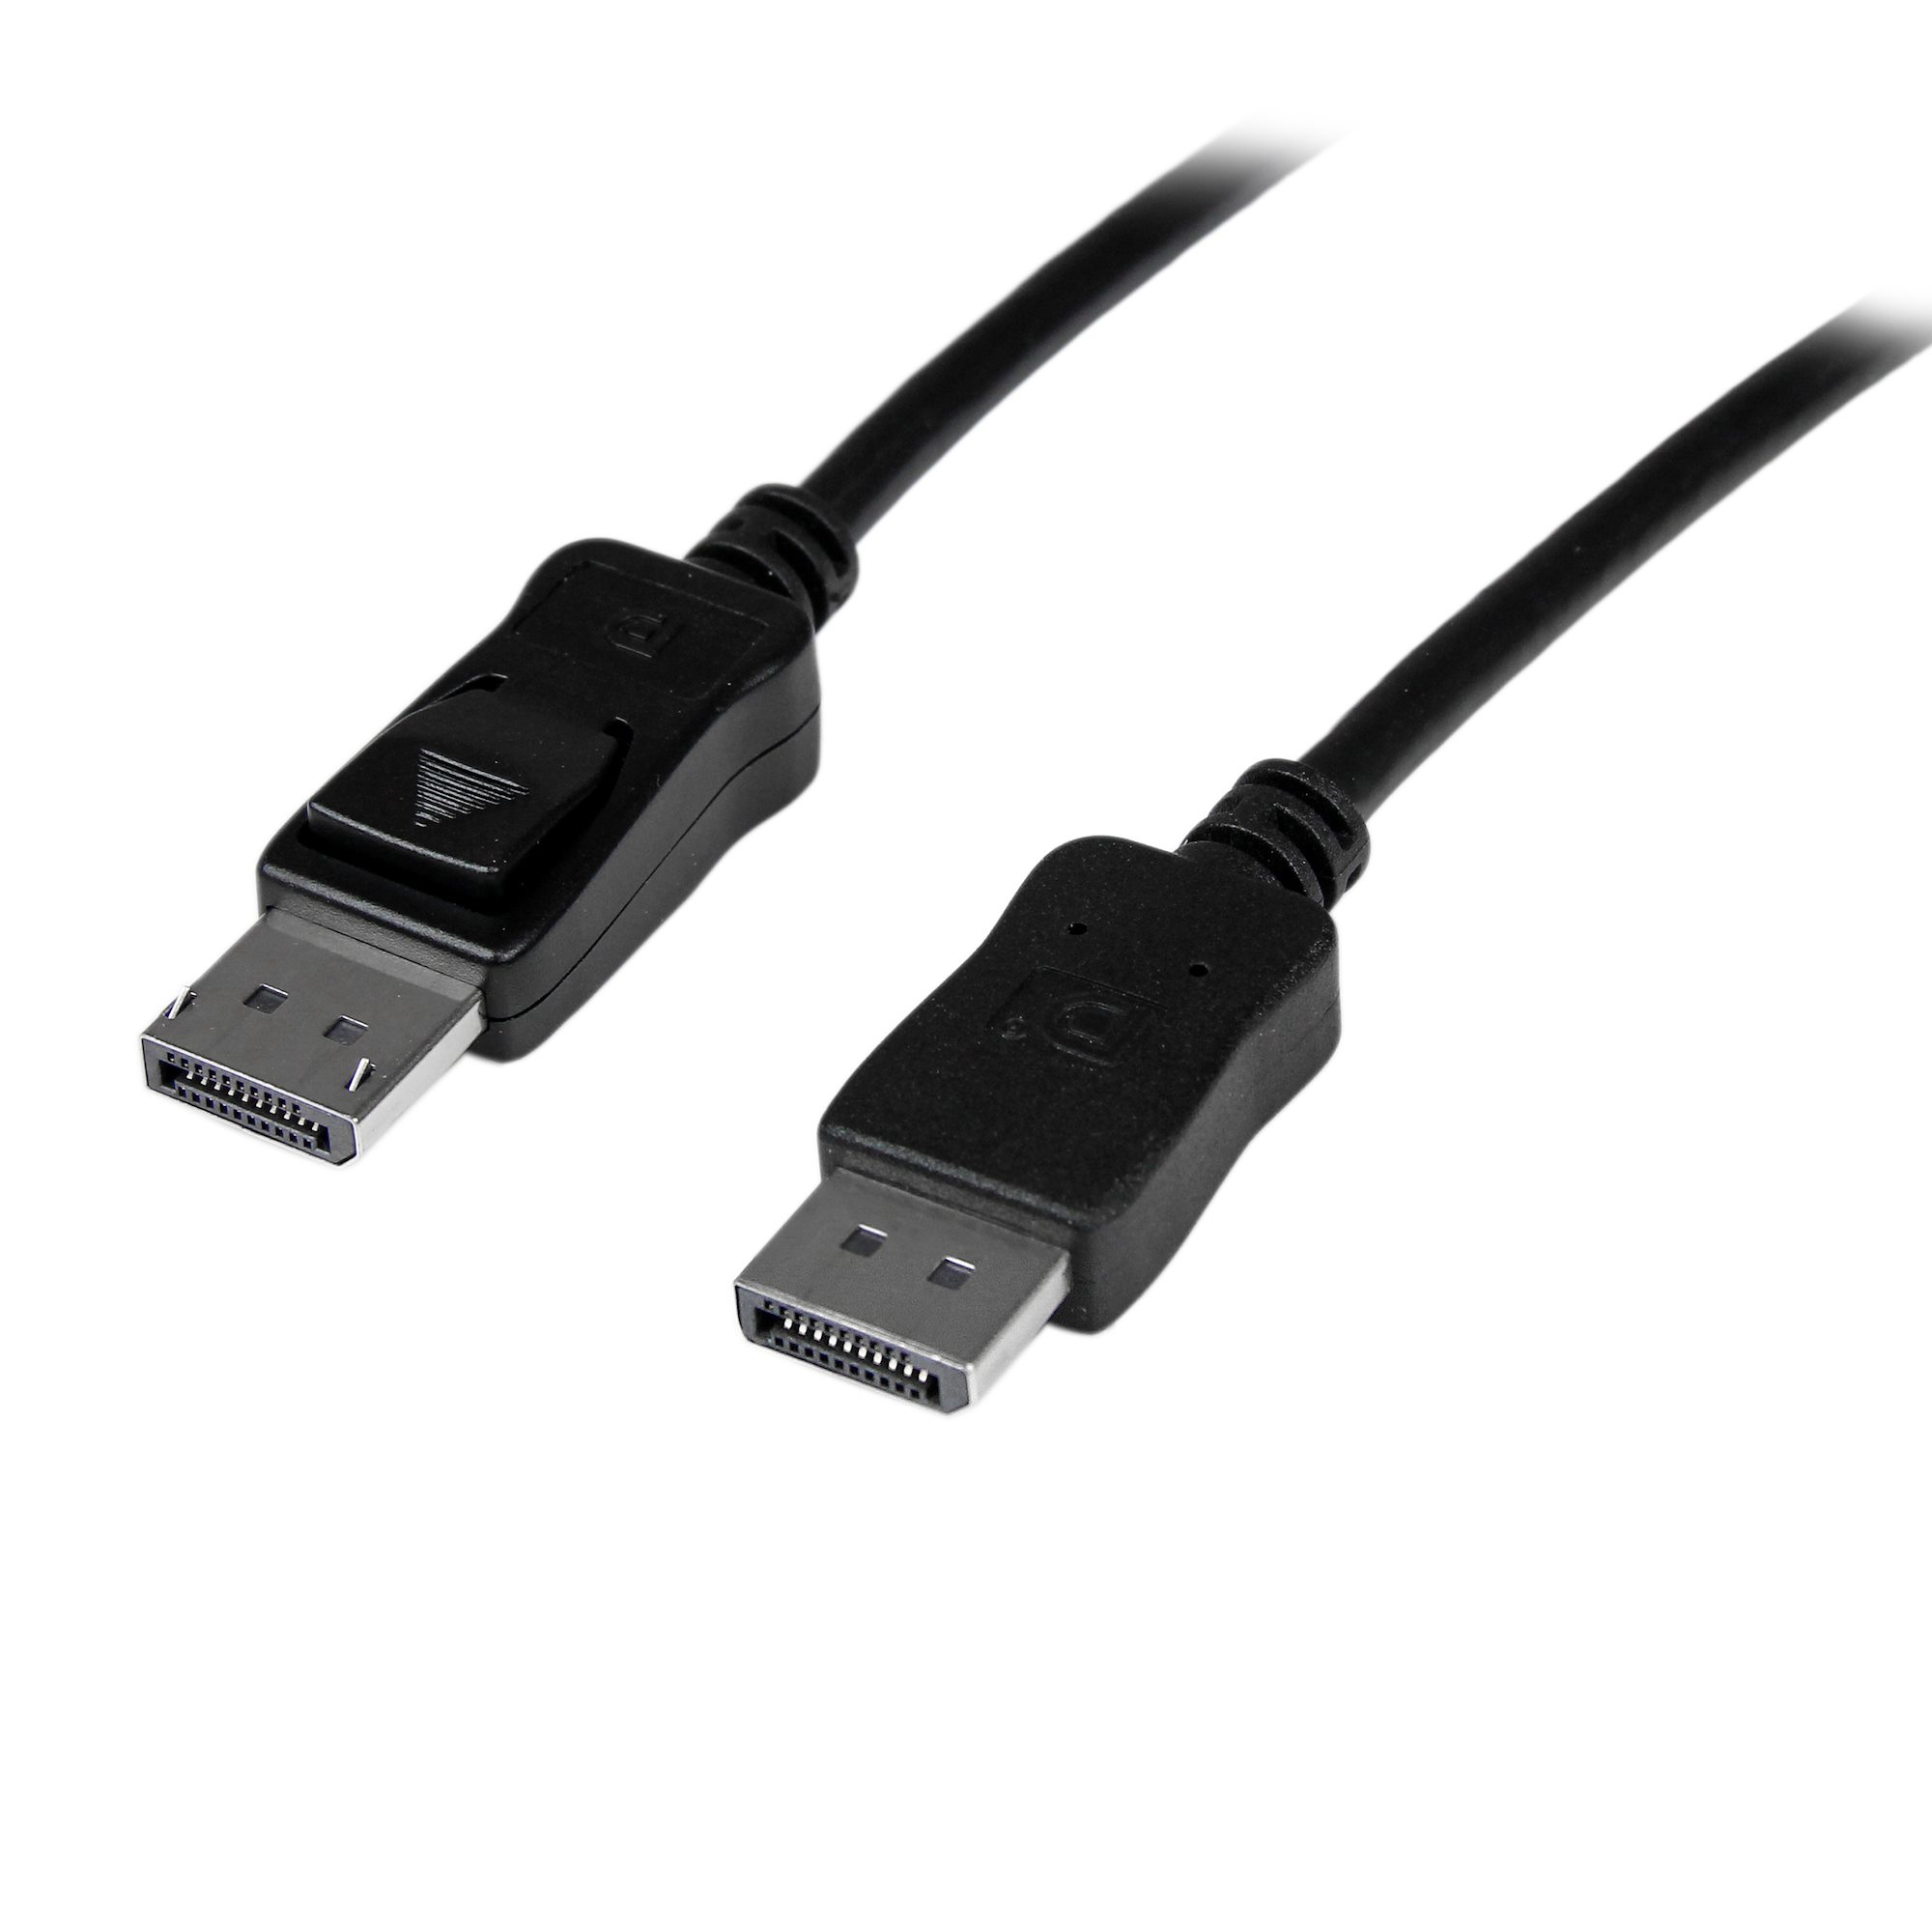 StarTech.com 10m aktives DisplayPort Kabel - Stecker/Stecker - DP auf DP Kabel - Schwarz - DisplayPort Anschlusskabel St/St - DisplayPort-Kabel - DisplayPort (M)